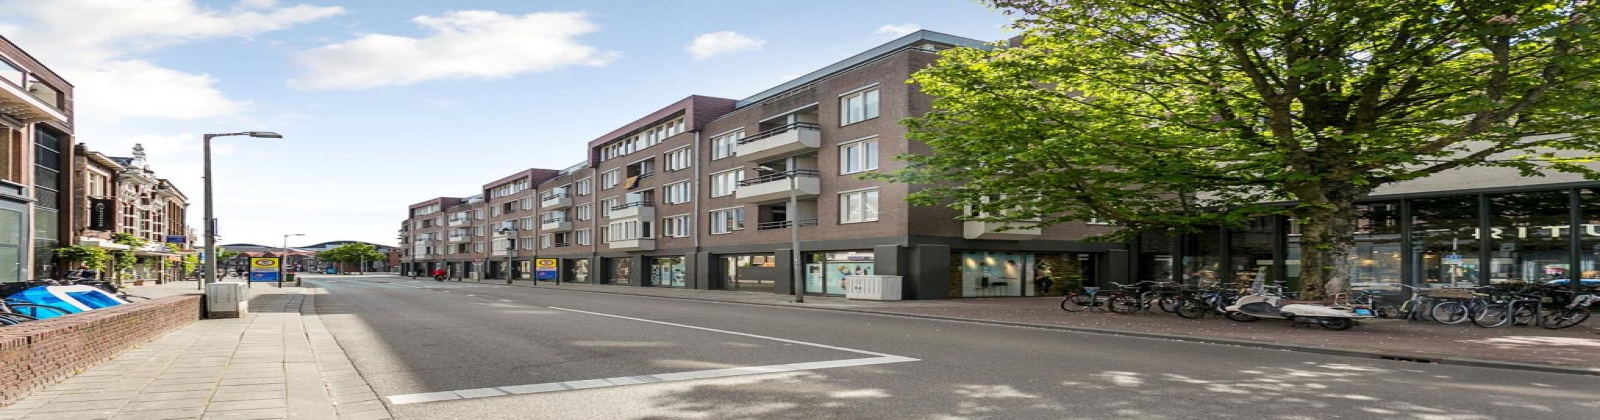 Houtmarkt, Breda, Noord-Brabant 4811JR, 1 Bedroom Bedrooms, ,1 BathroomBathrooms,Appartement,Te huur,Houtmarkt,3,1048